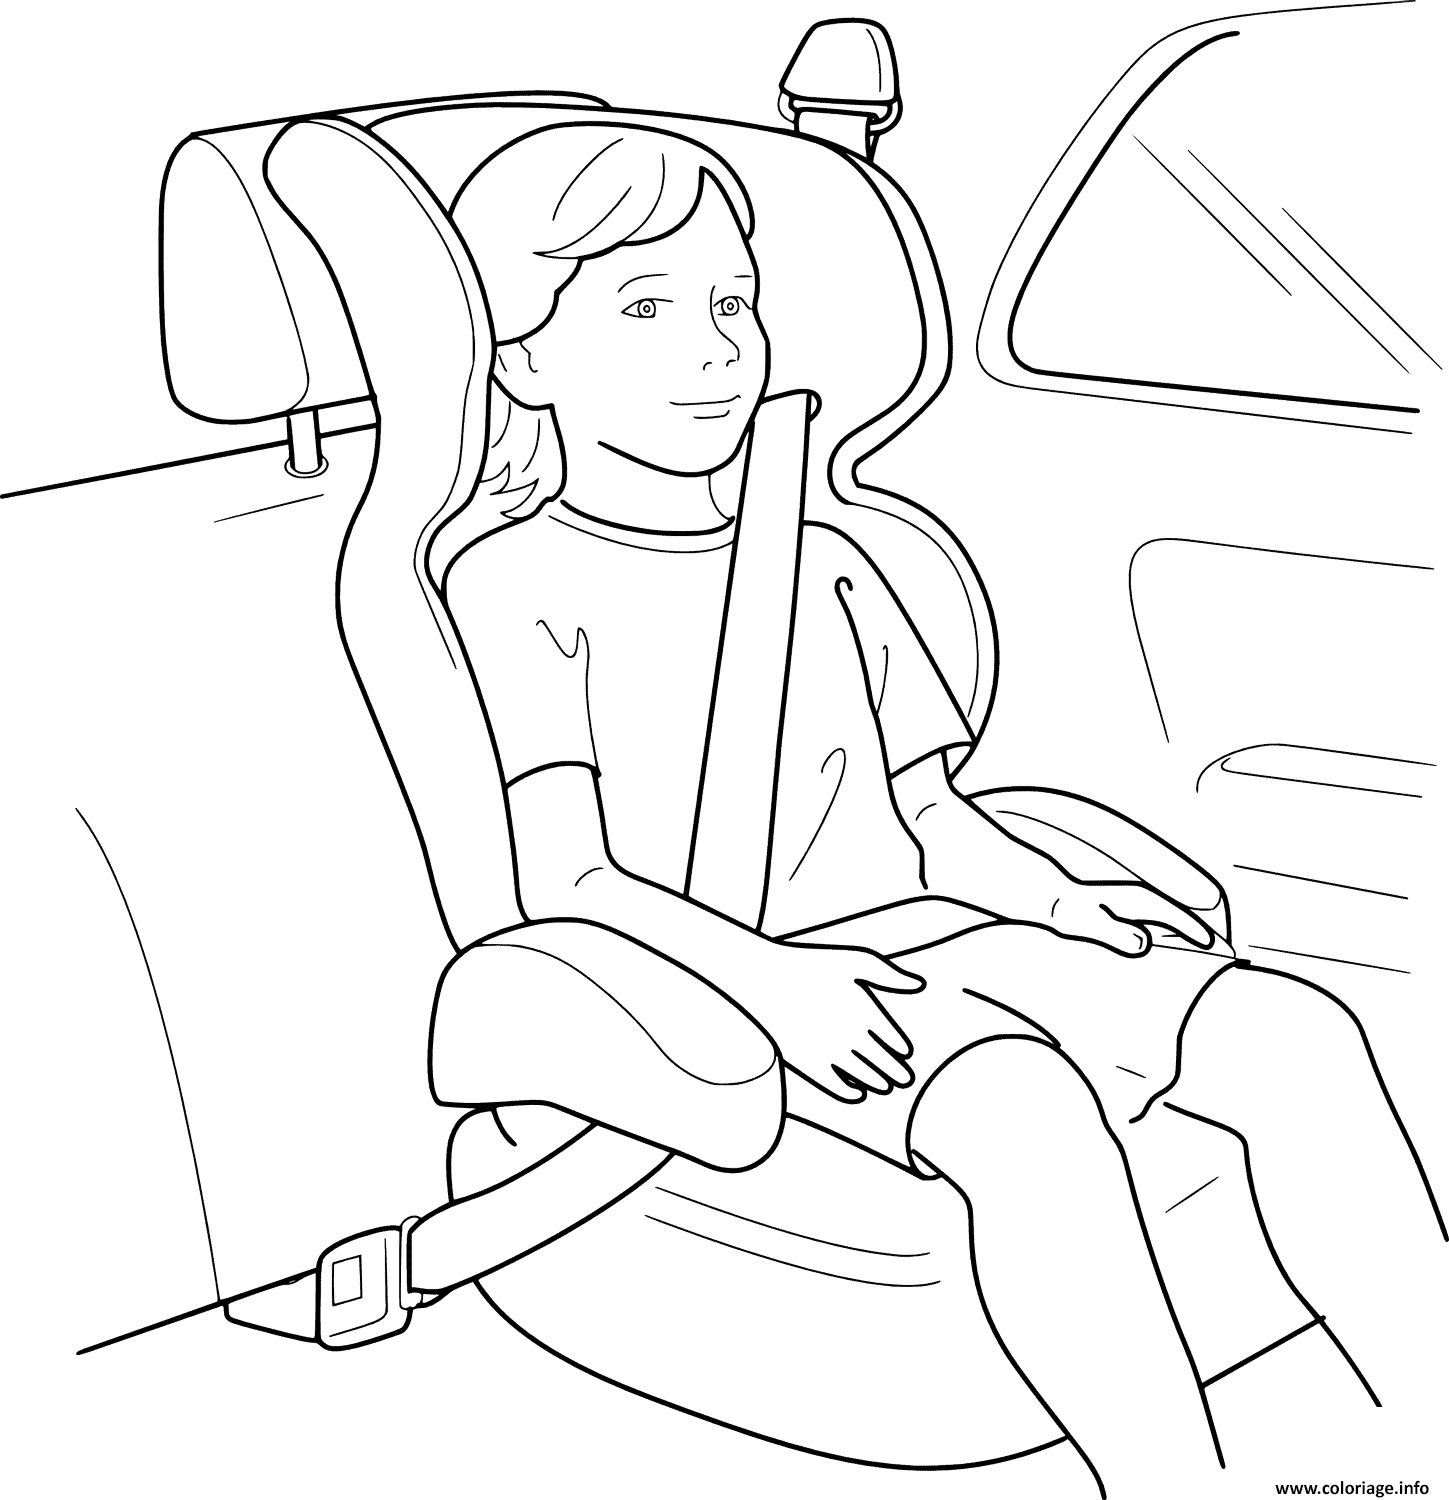 Dessin boucler la ceinture pour la securite voiture enfant Coloriage Gratuit à Imprimer